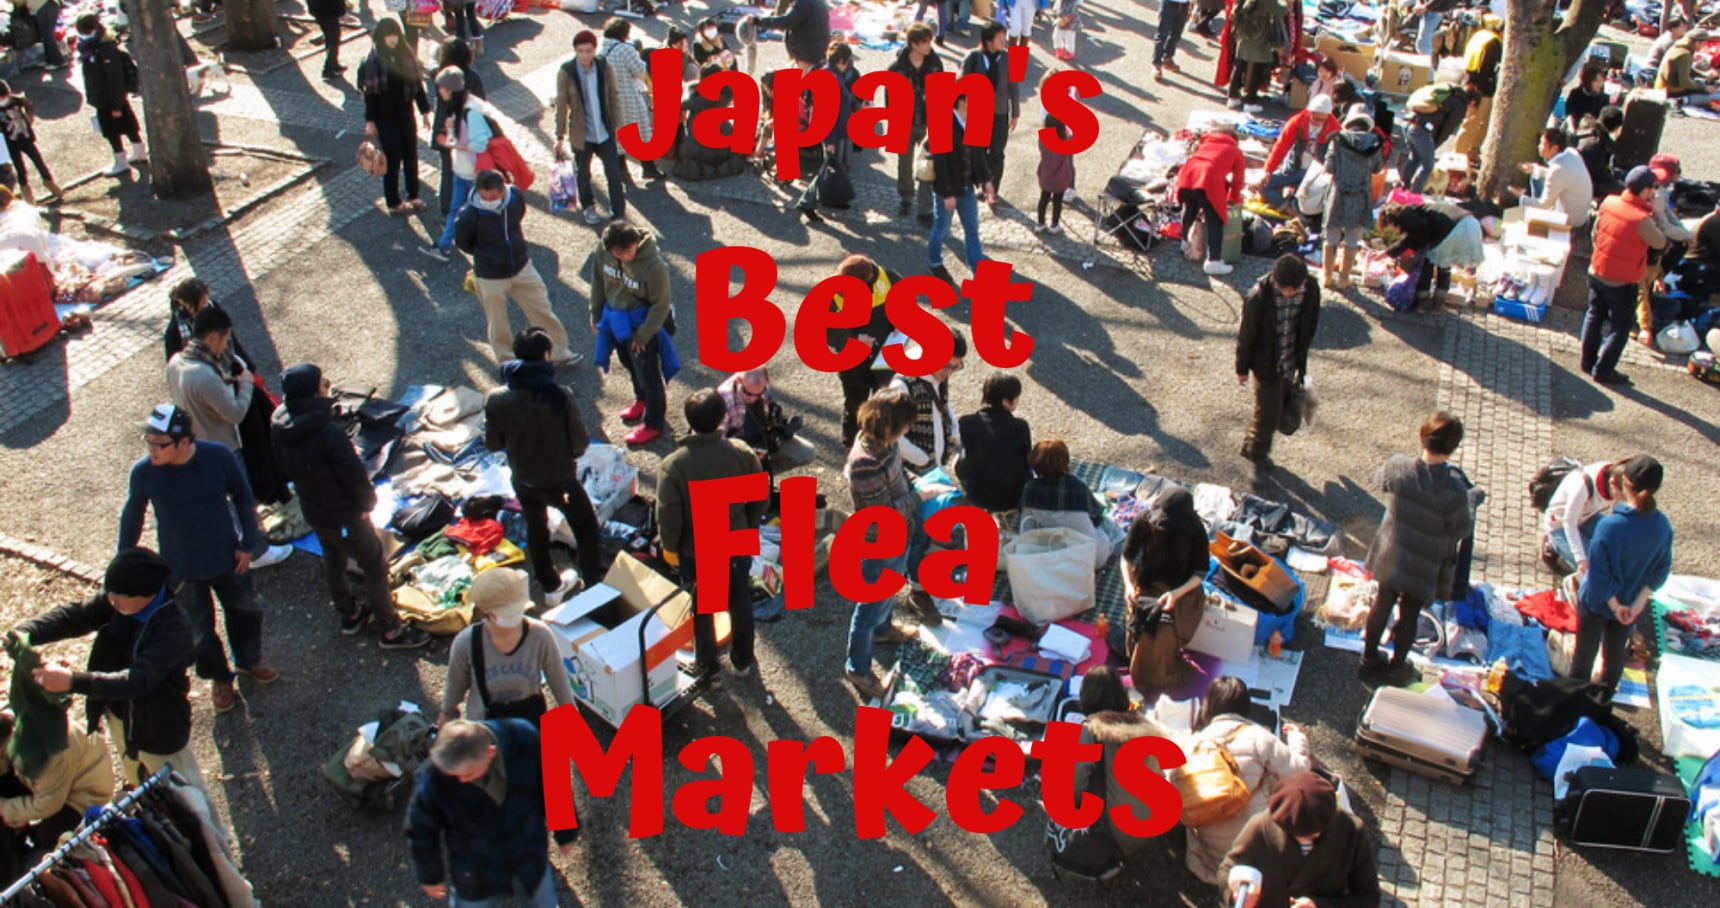 Japan's Best Flea Markets